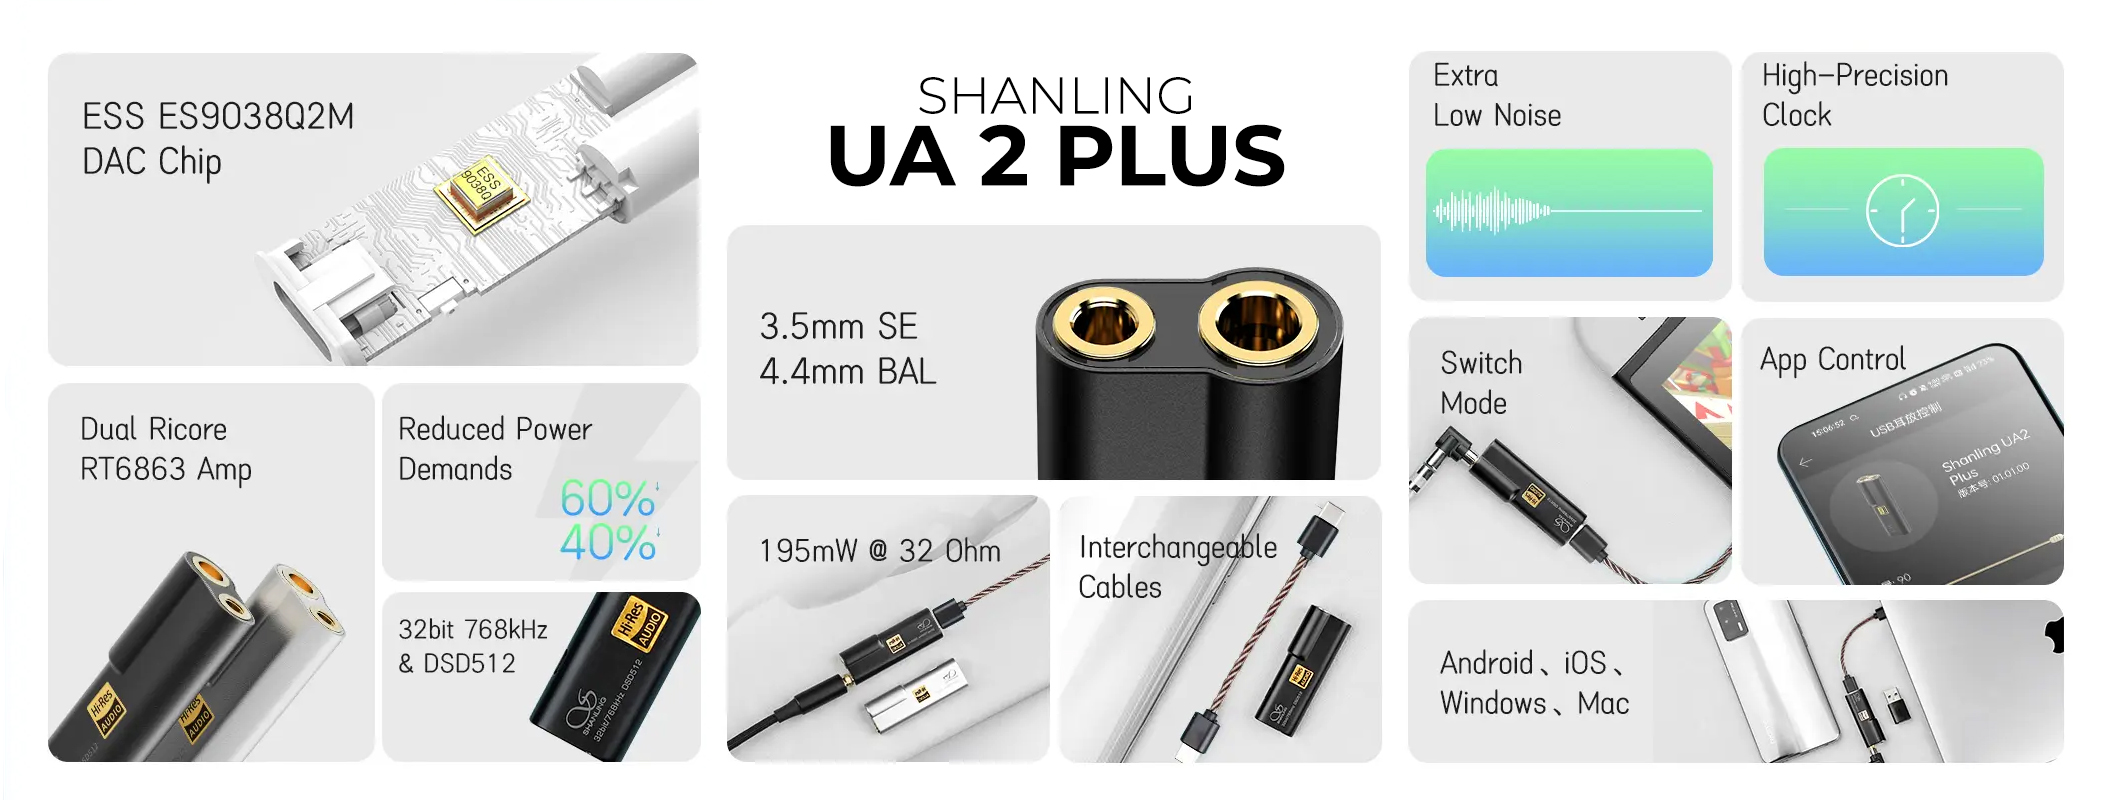 Shanling UA2 Plus Black